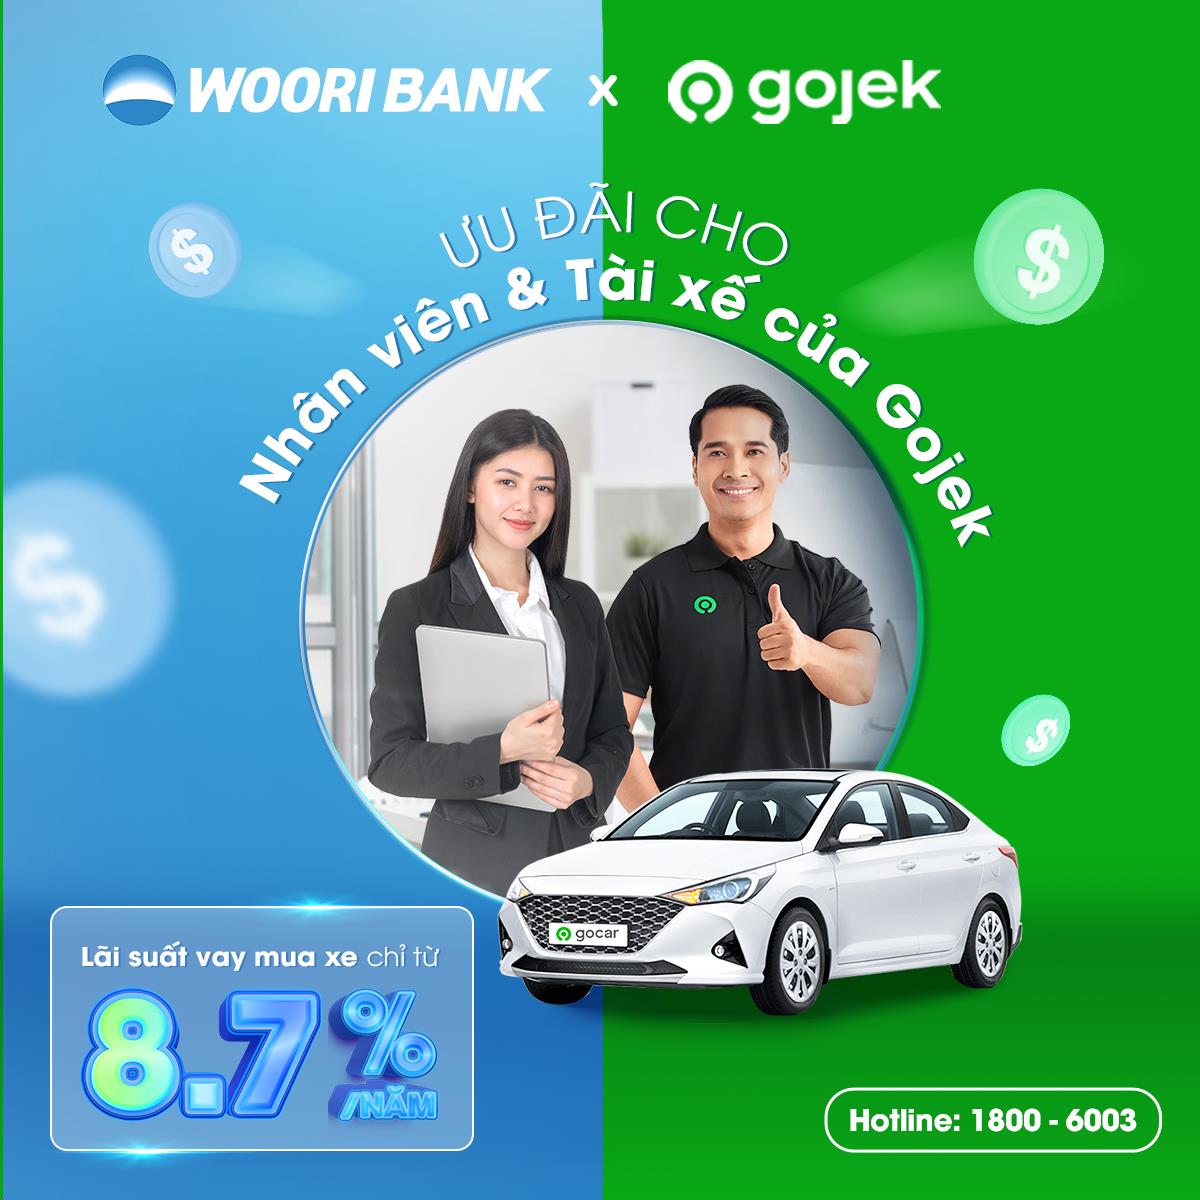 Woori hợp tác cùng Gojek ưu đãi lãi suất khi vay mua ô tô - Ảnh 1.